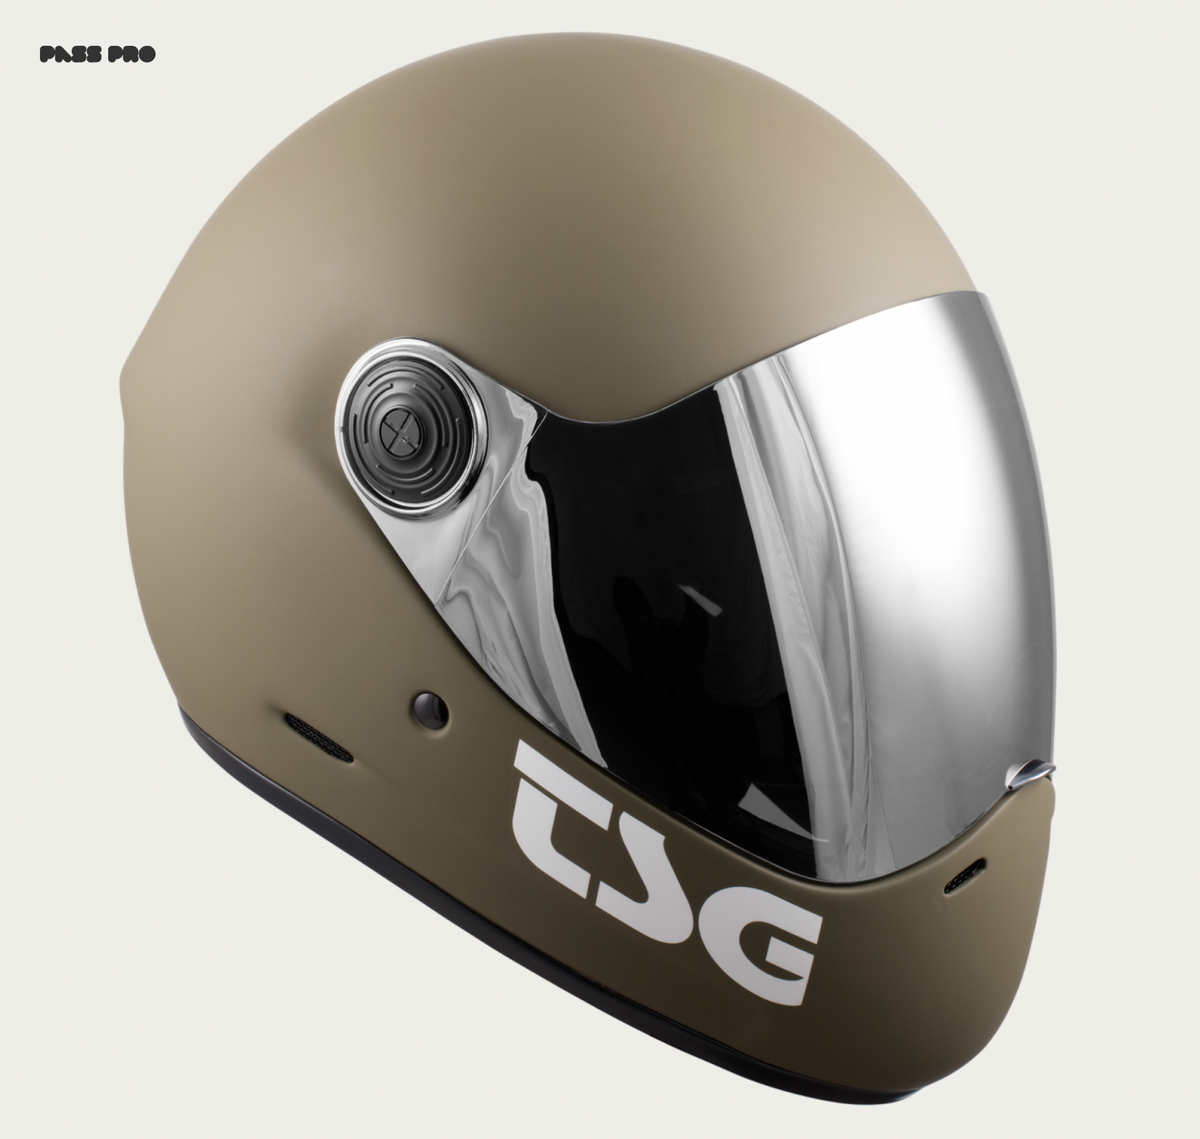 Pass Pro Full Face Helmet - TSG